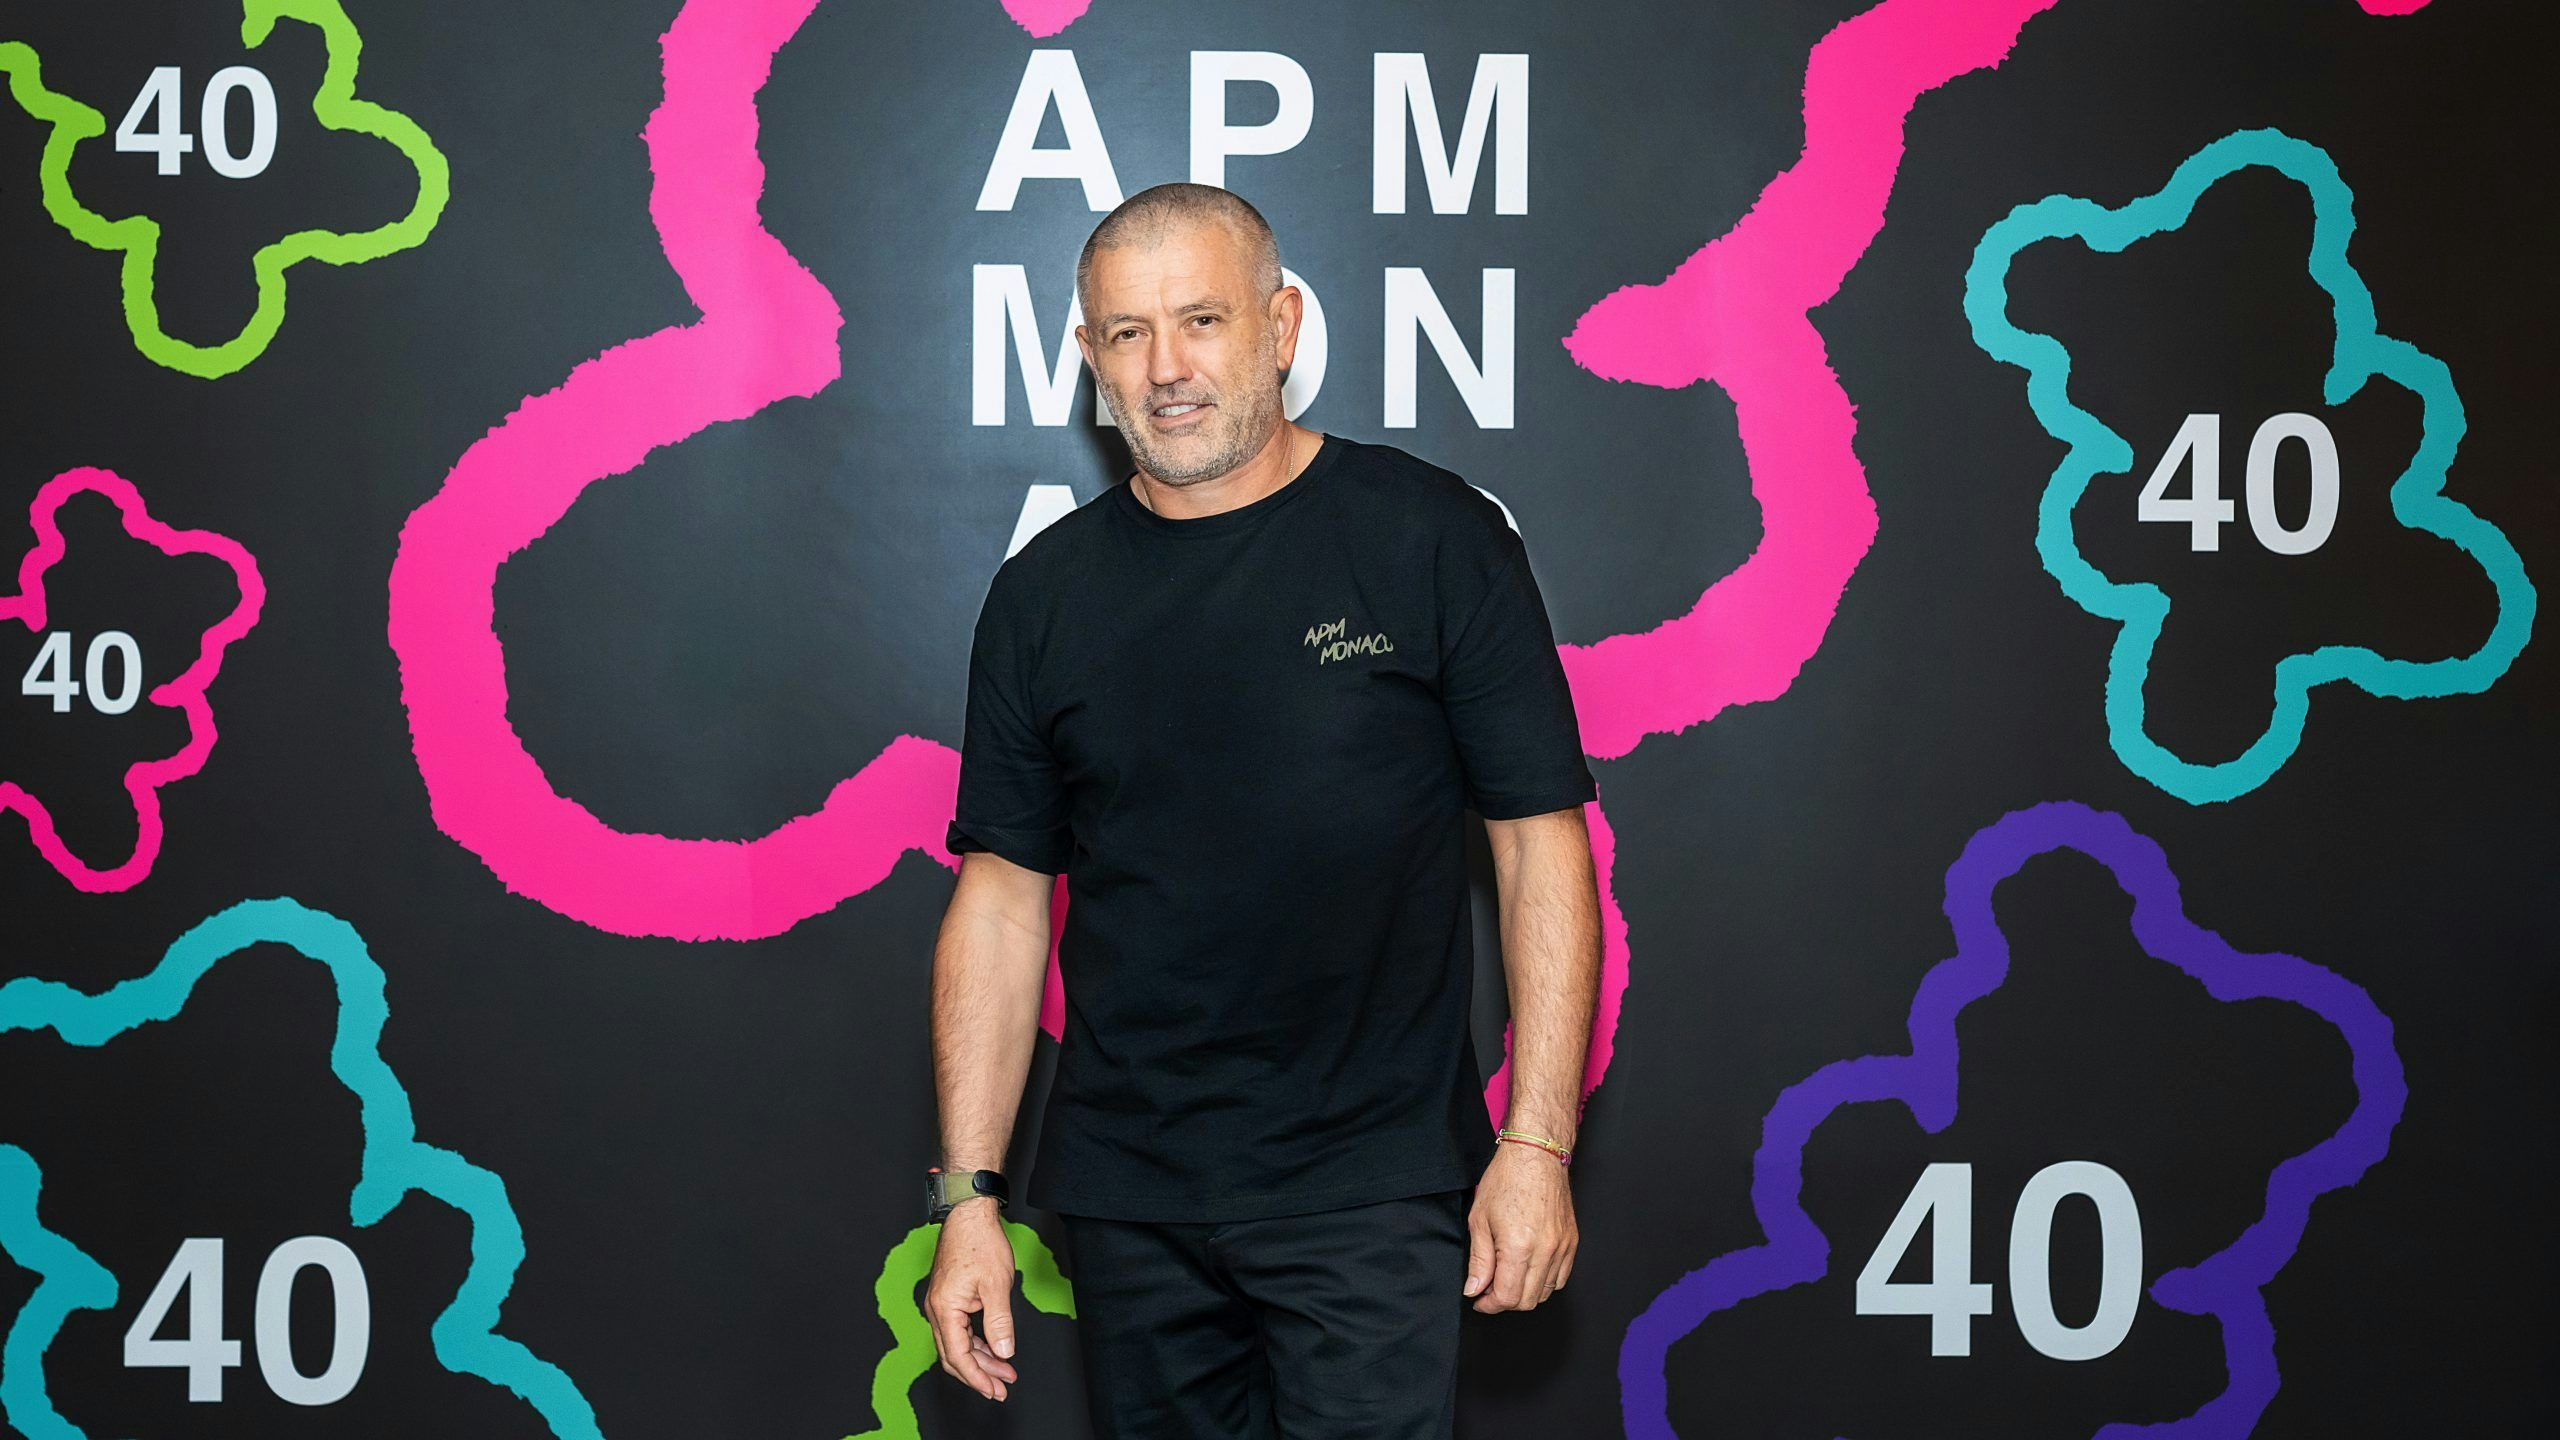 CEO Philippe Prette on APM Monaco and China